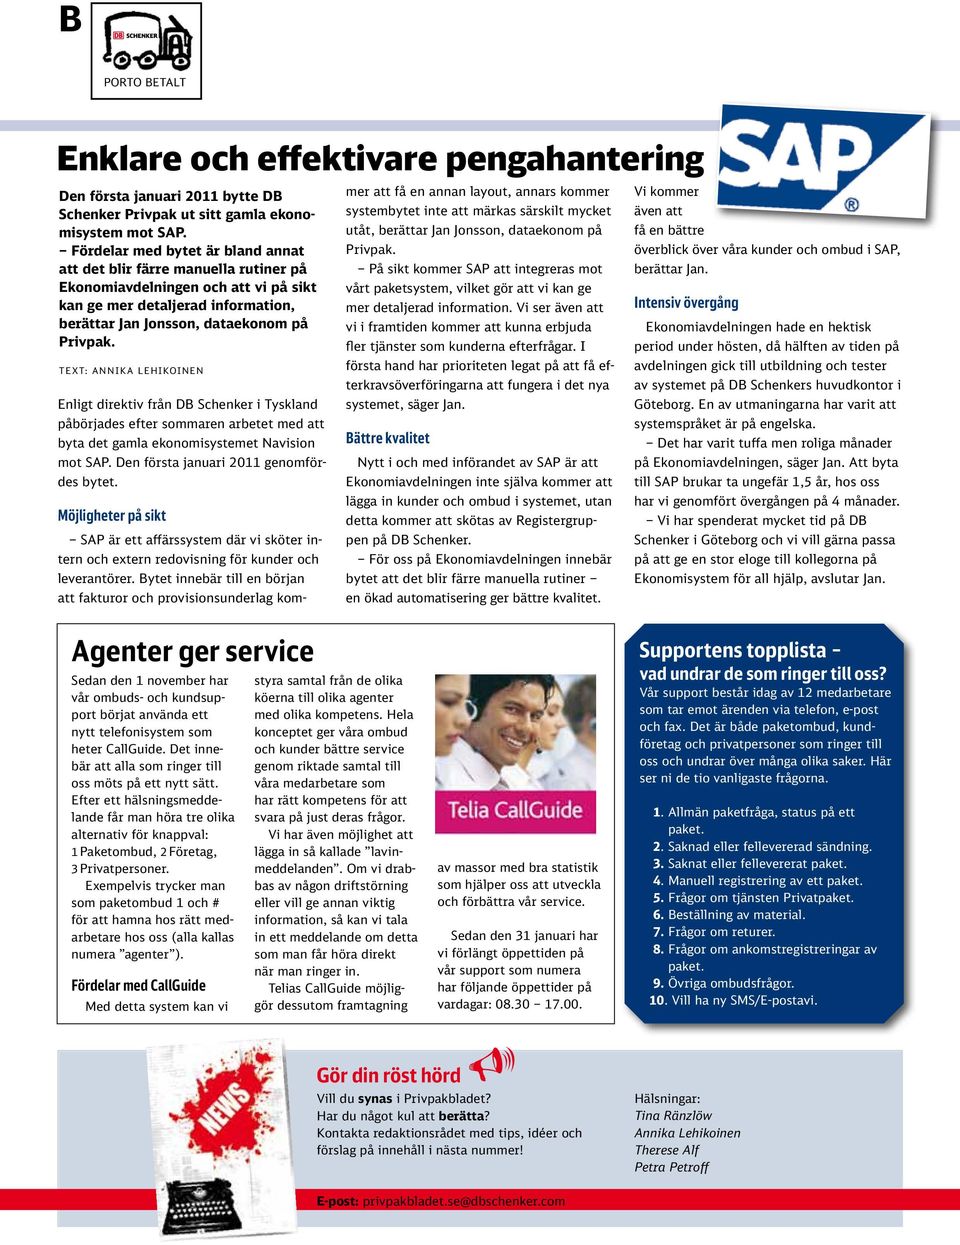 LEHIKOINEN Enligt direktiv från DB Schenker i Tyskland påbörjades efter sommaren arbetet med att byta det gamla ekonomisystemet Navision mot SAP. Den första januari 2011 genomfördes bytet.